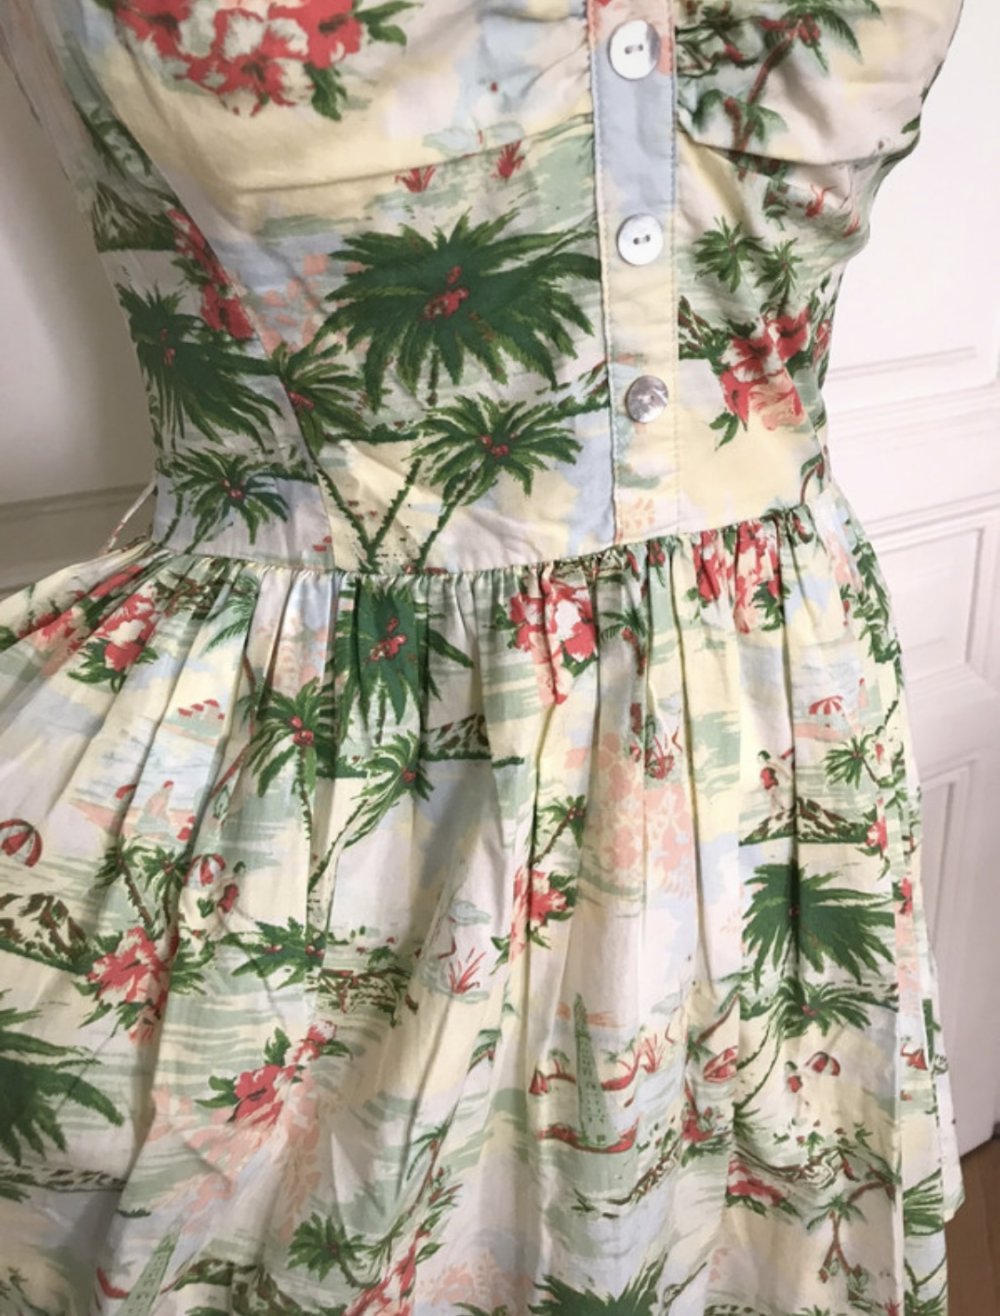 Süßes Sommerkleid mit Tropenmuster, leicht ausgestellt, von New Look, Gr. 36/38 (UK 10)